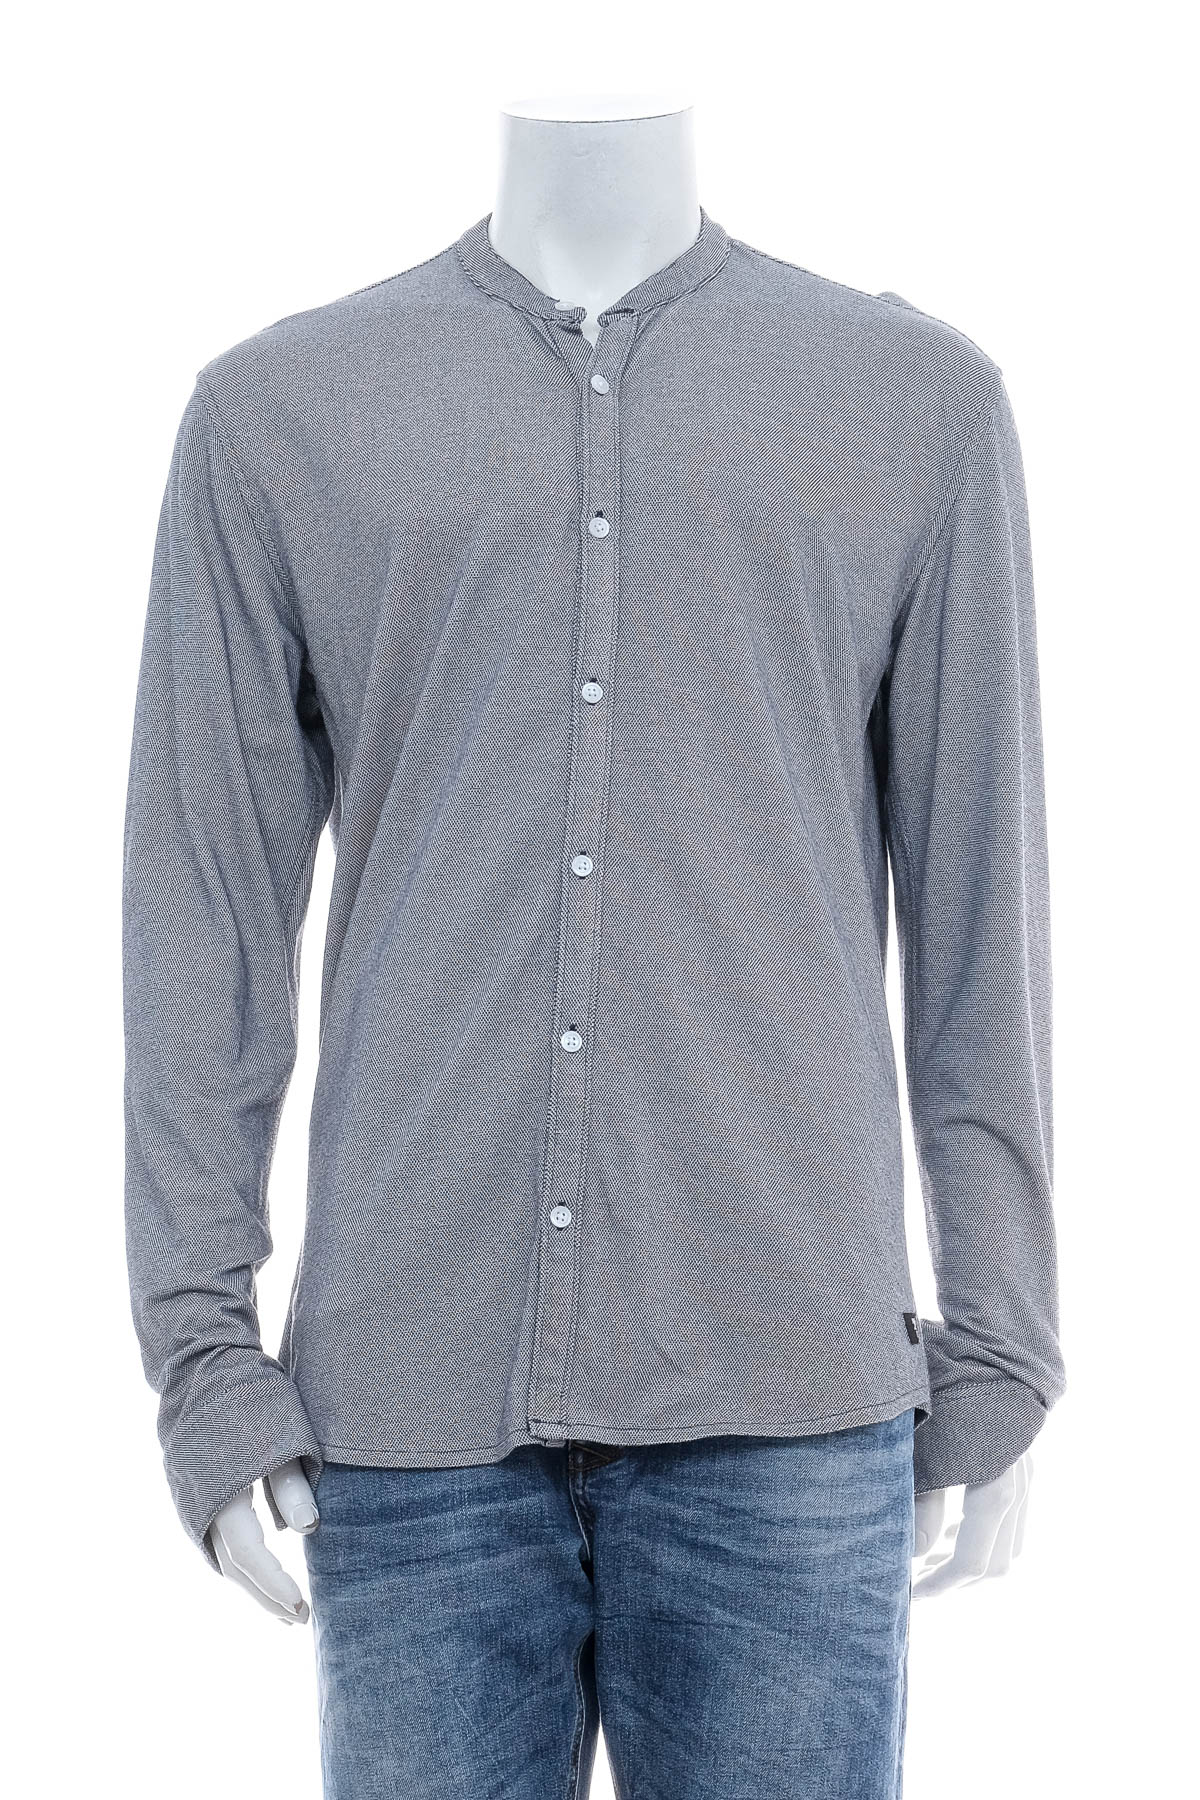 Ανδρικό πουκάμισο - TOM TAILOR Denim - 0